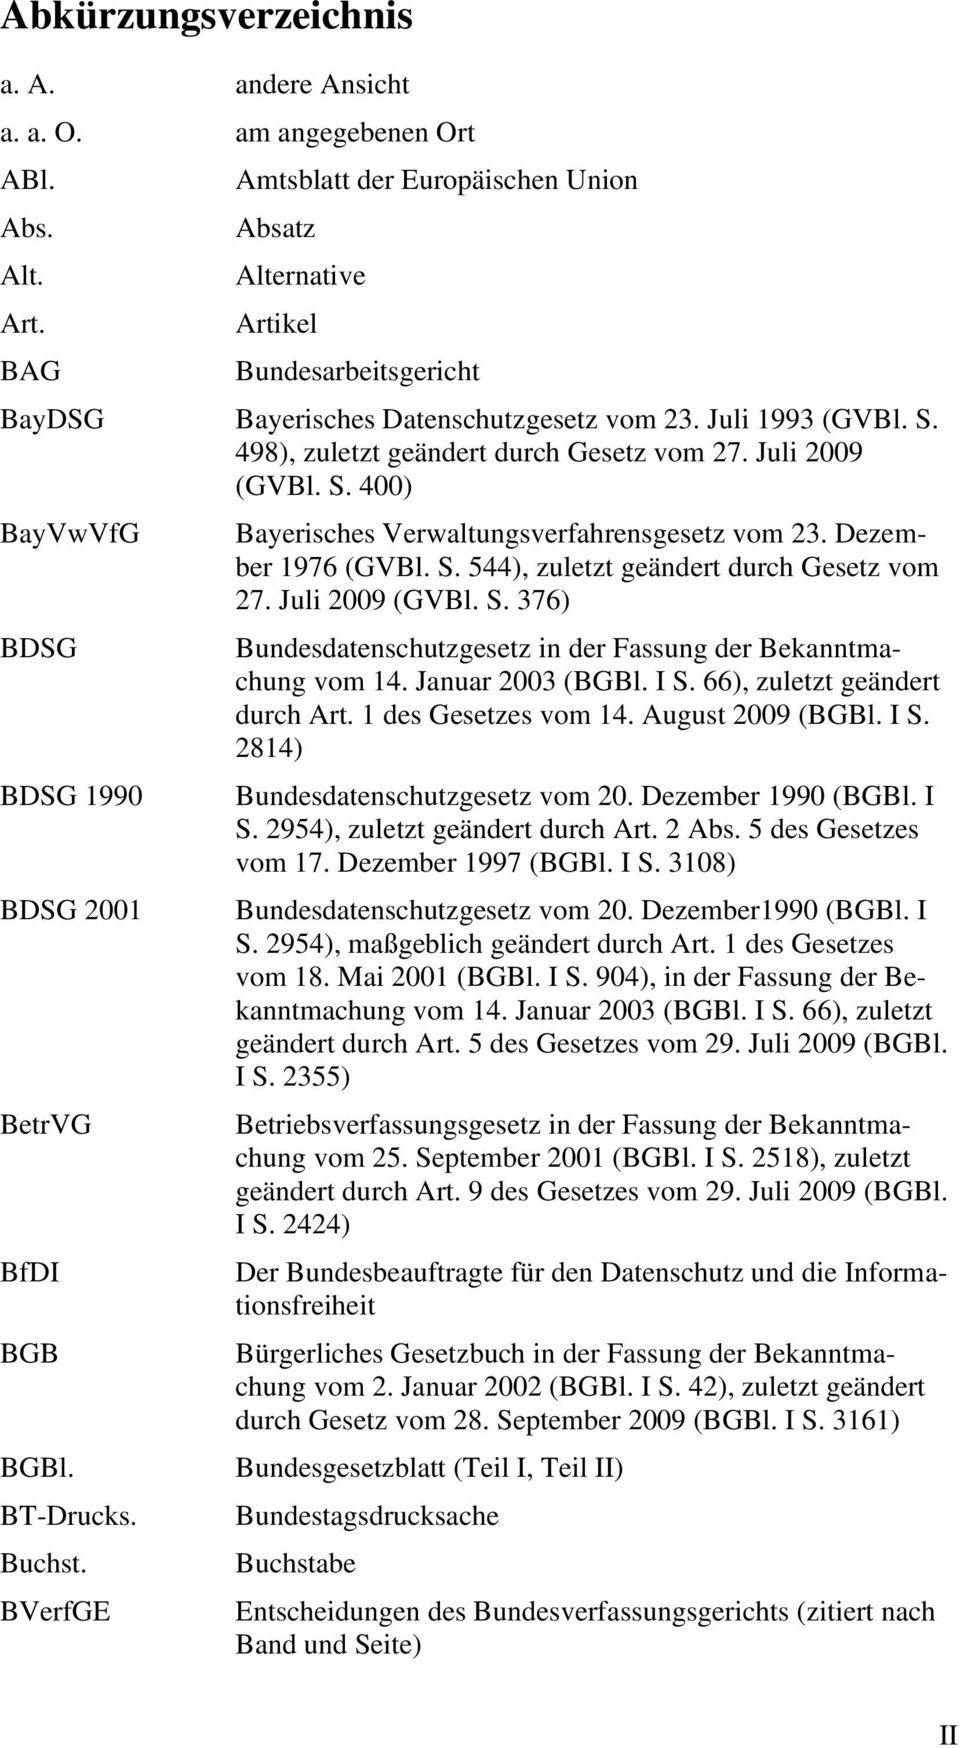 Juli 2009 (GVBl. S. 400) BayVwVfG BDSG BDSG 1990 BDSG 2001 BetrVG BfDI BGB BGBl. BT-Drucks. Buchst. BVerfGE Bayerisches Verwaltungsverfahrensgesetz vom 23. Dezember 1976 (GVBl. S. 544), zuletzt geändert durch Gesetz vom 27.